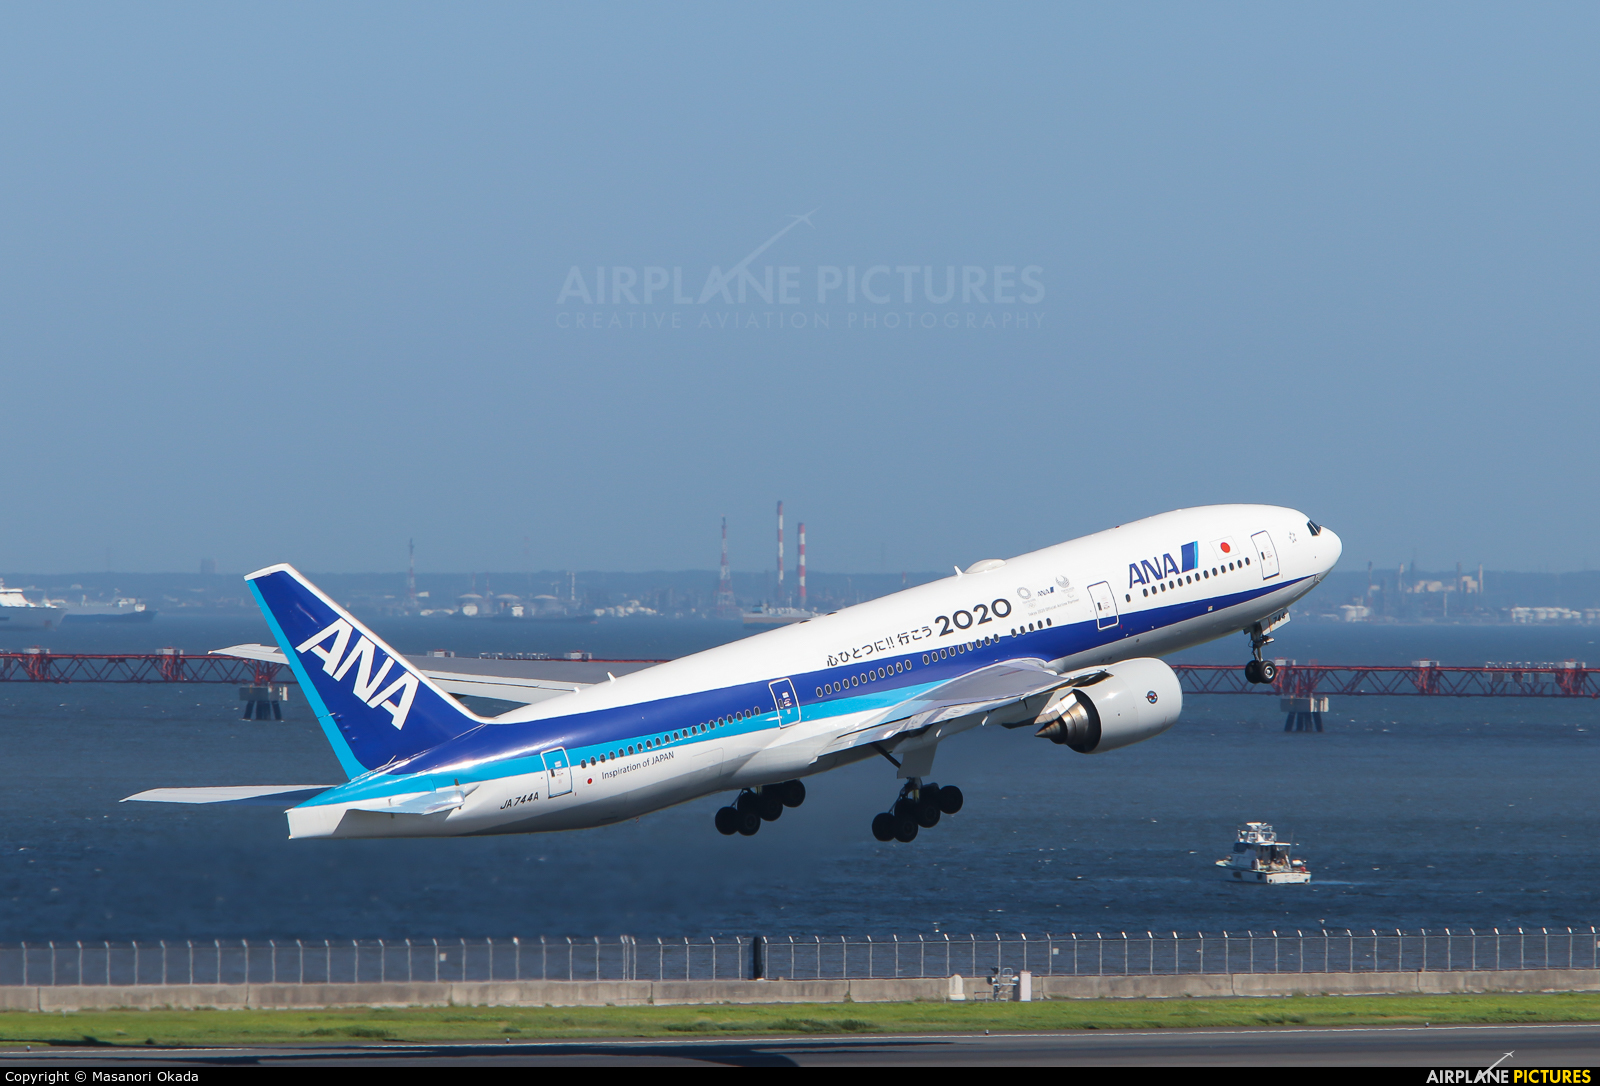 ANA - All Nippon Airways JA744A aircraft at Tokyo - Haneda Intl